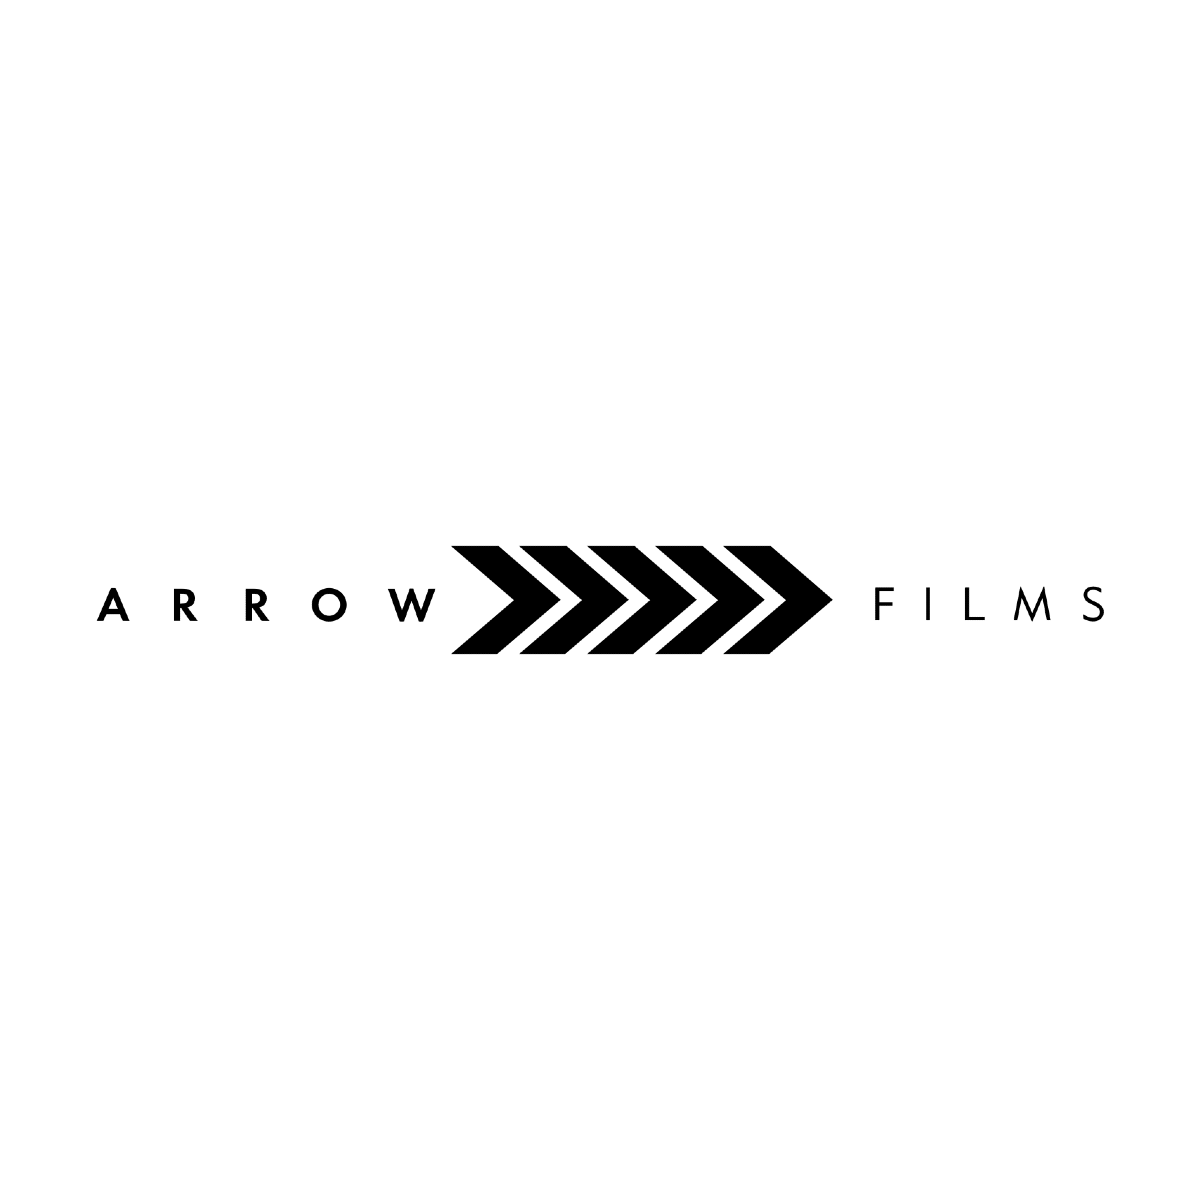 arrowfilms.com